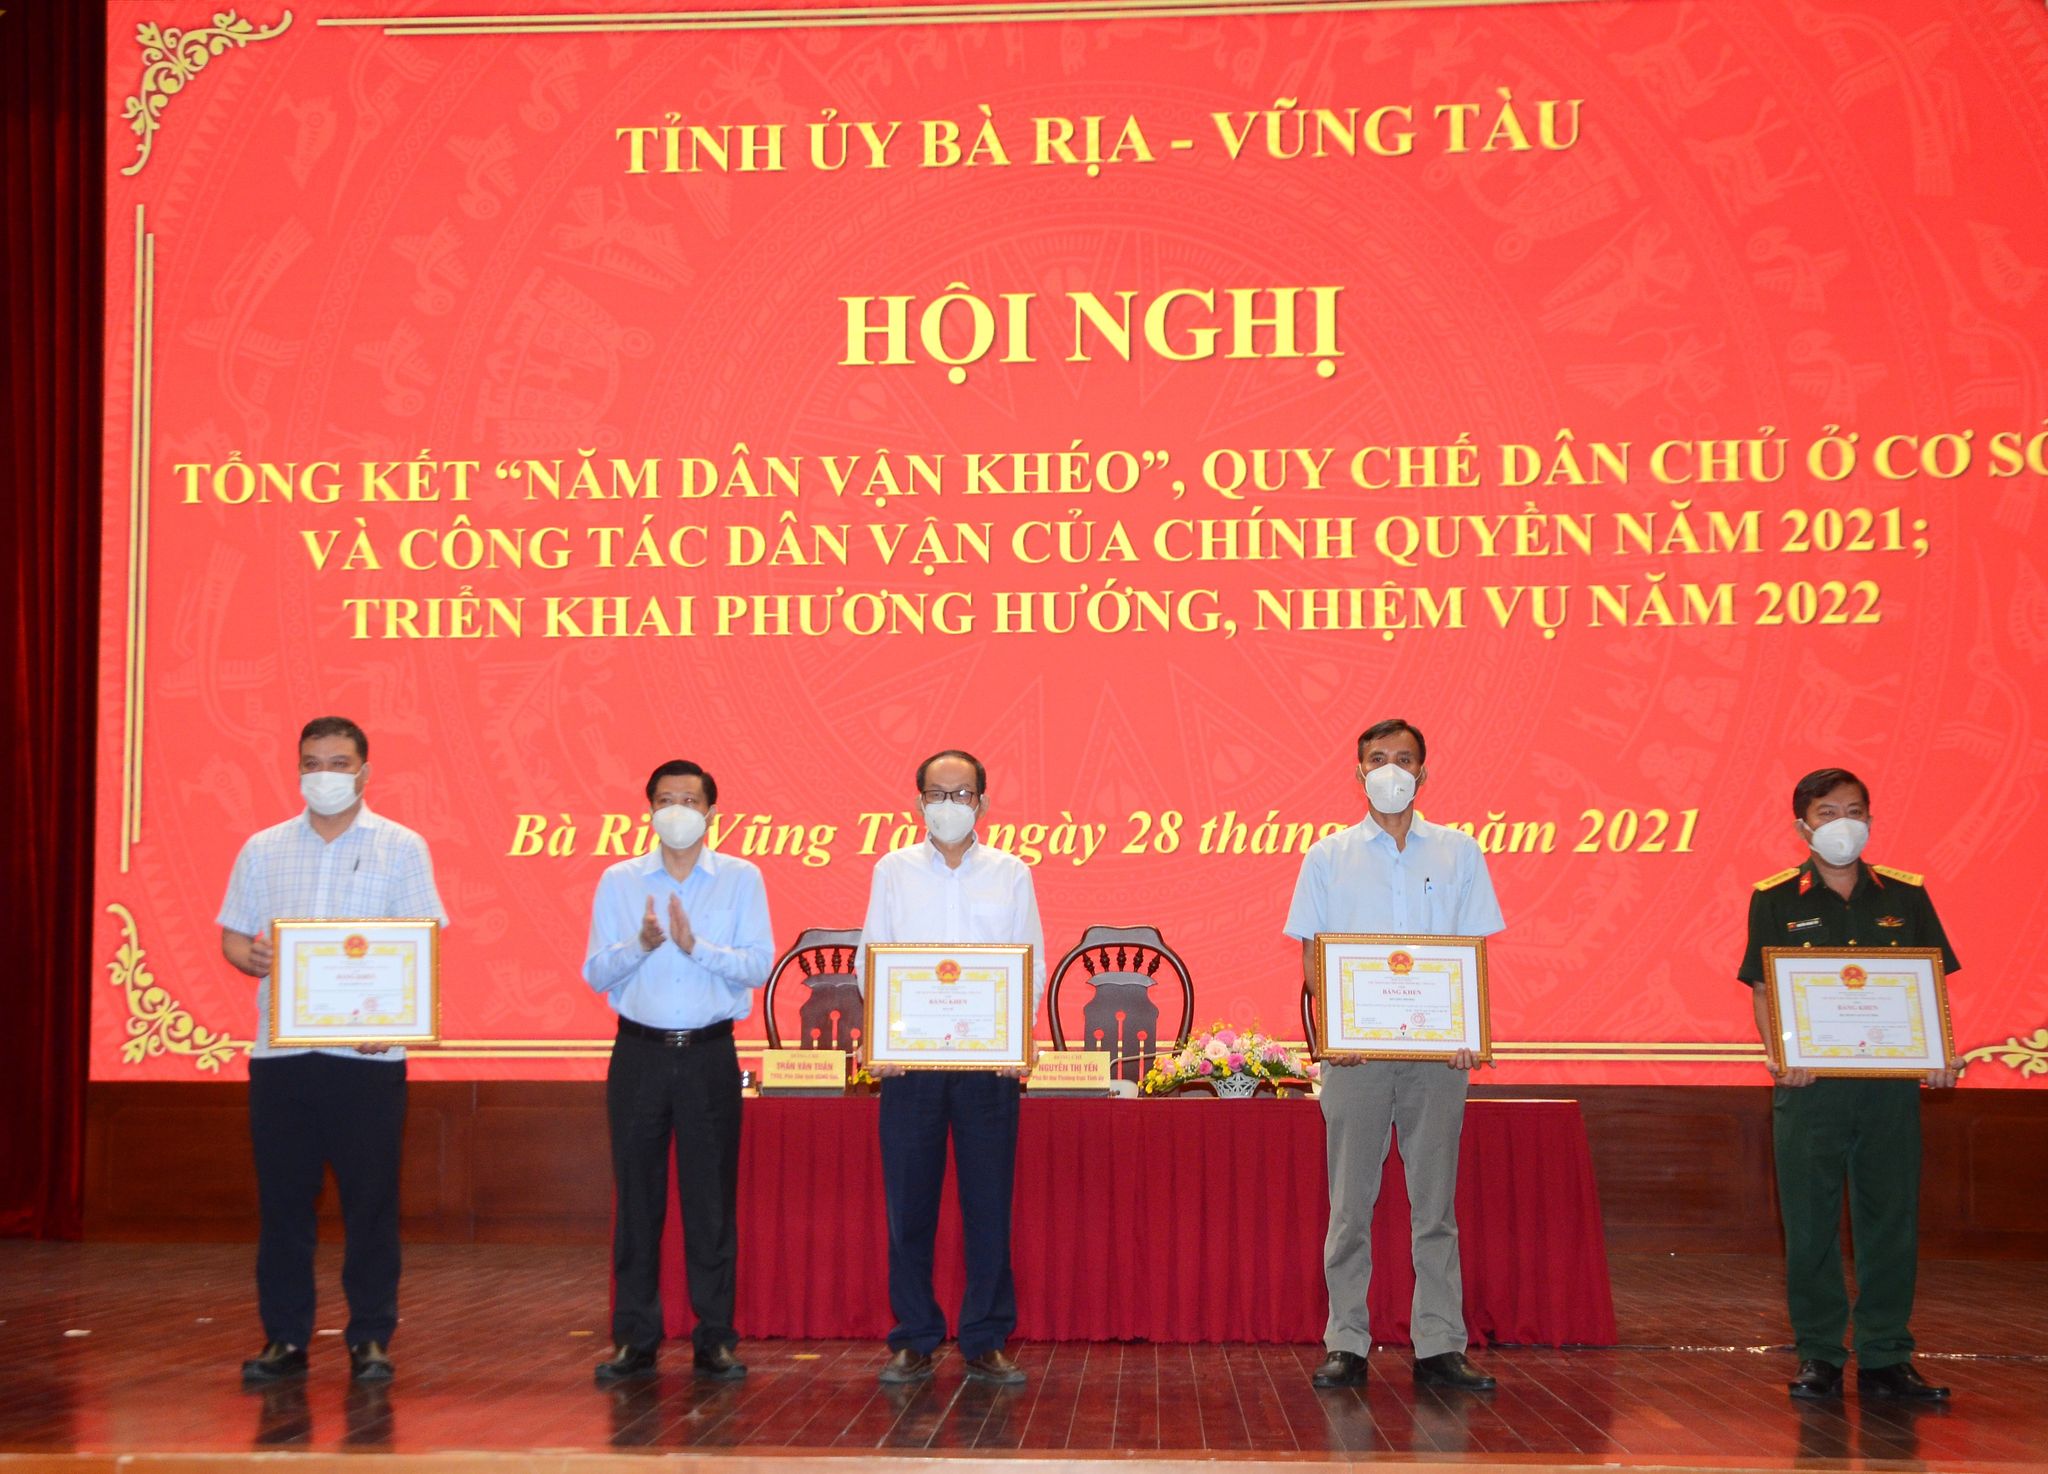 Ông Trần Văn Tuấn, Phó Chủ tịch UBND tỉnh trao Bằng khen của Chủ tịch UBND tỉnh cho các tập thể có thành tích xuất sắc trong thực hiện công tác dân vận của chính quyền năm 2021.